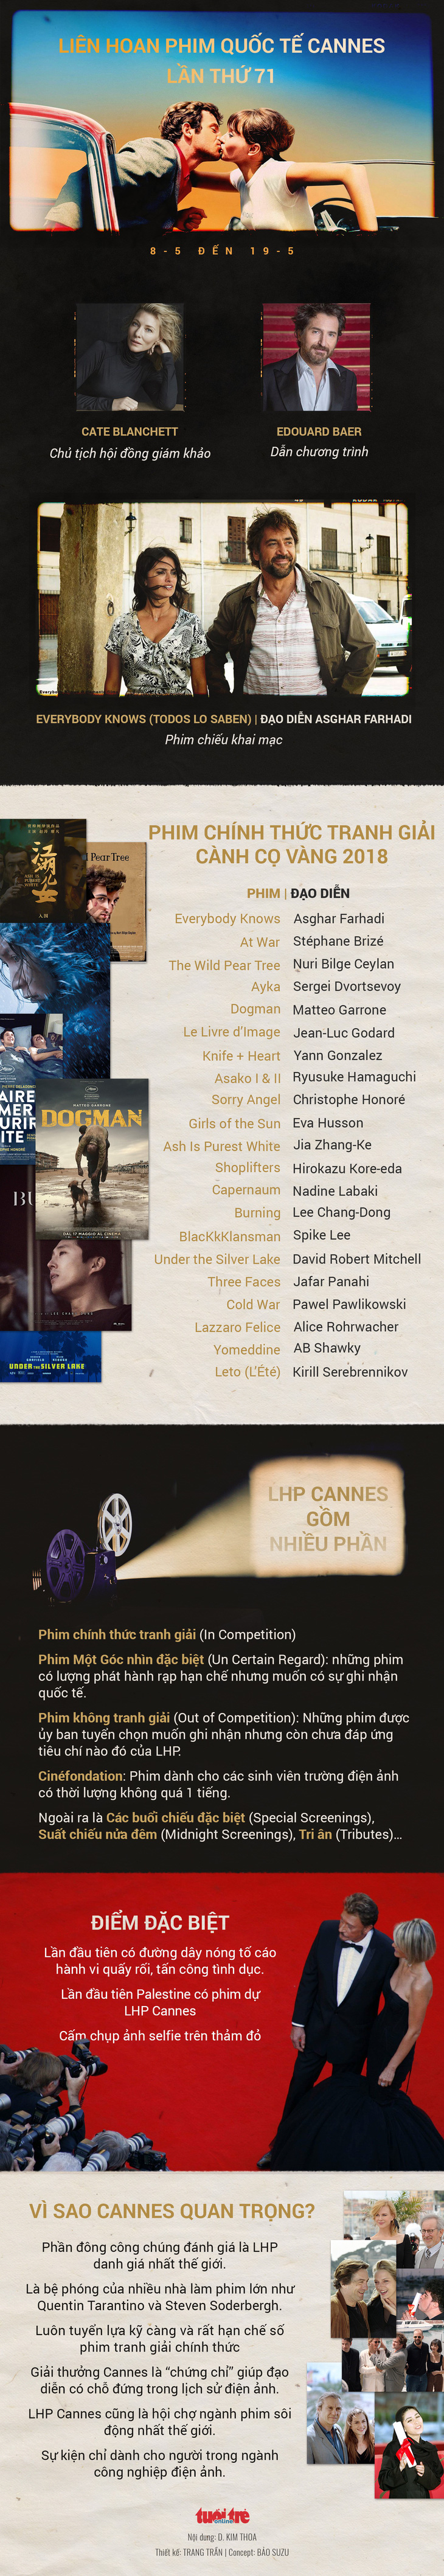 Cannes 2018: Phim Lý Nhã Kỳ góp vốn không đoạt giải nào - Ảnh 11.